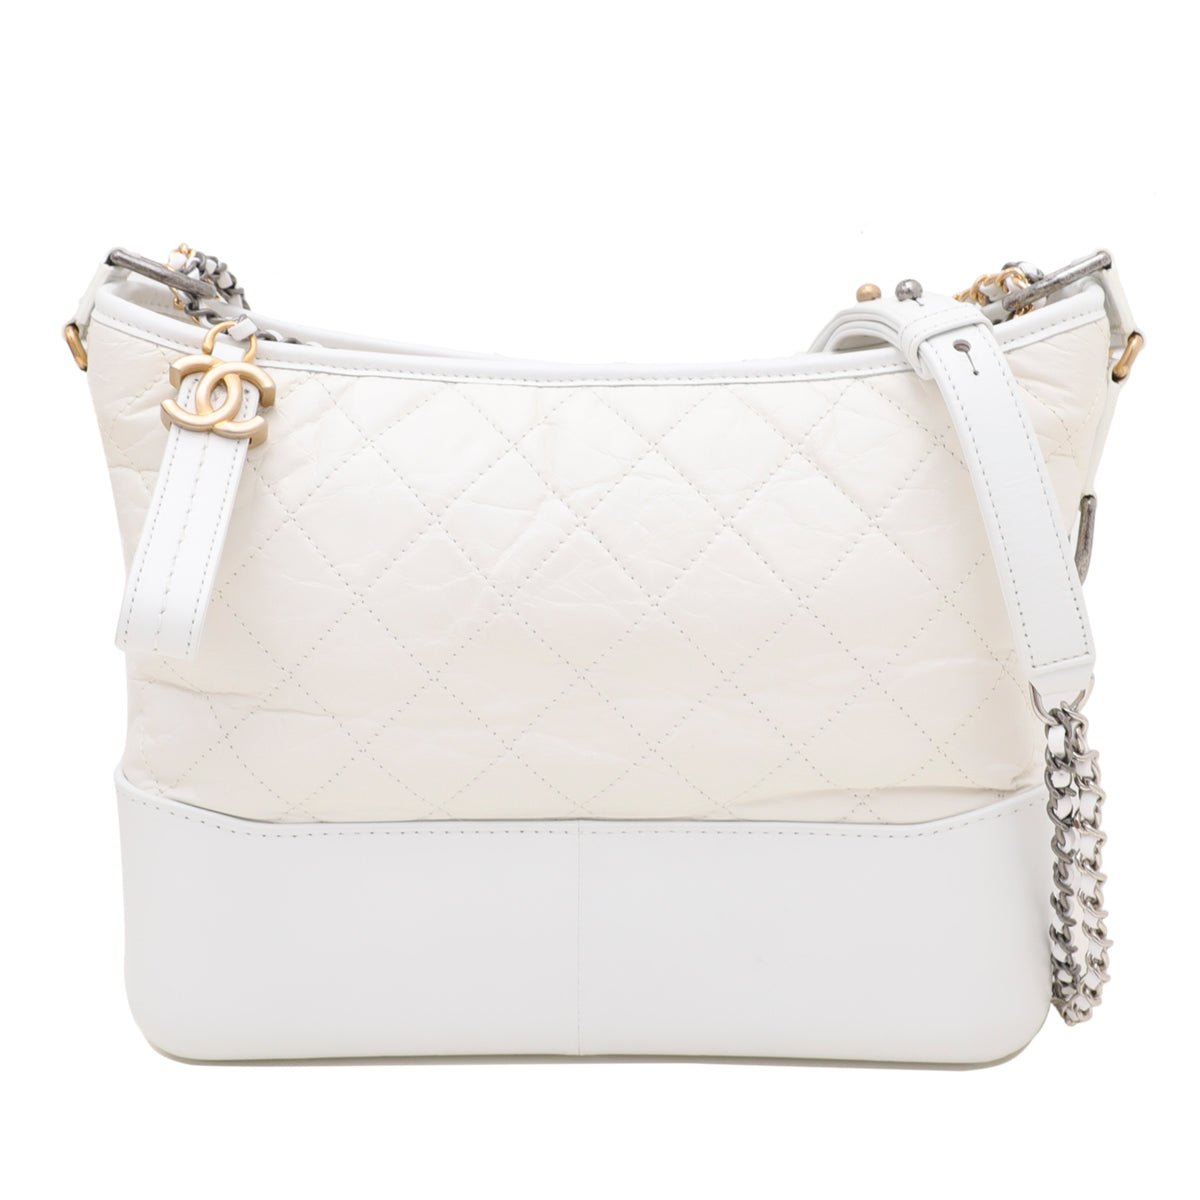 Chanel White Gabrielle Medium Bag